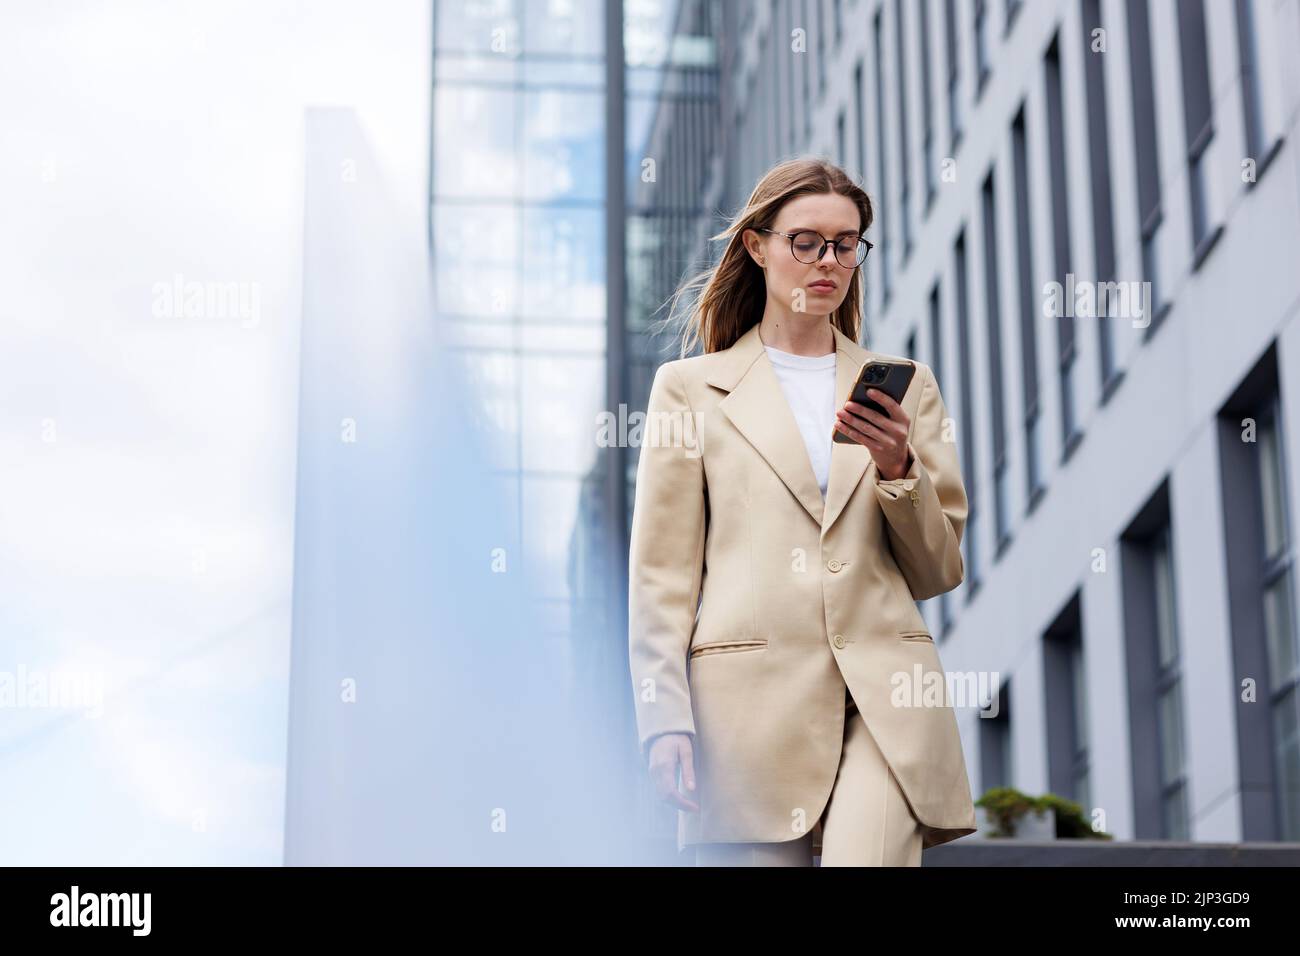 Ein junges blondes Mädchen vor dem Hintergrund eines Geschäftszentrums, Bürozentrums. Unterwegs liest er die Nachrichten von seinem Smartphone. Stockfoto